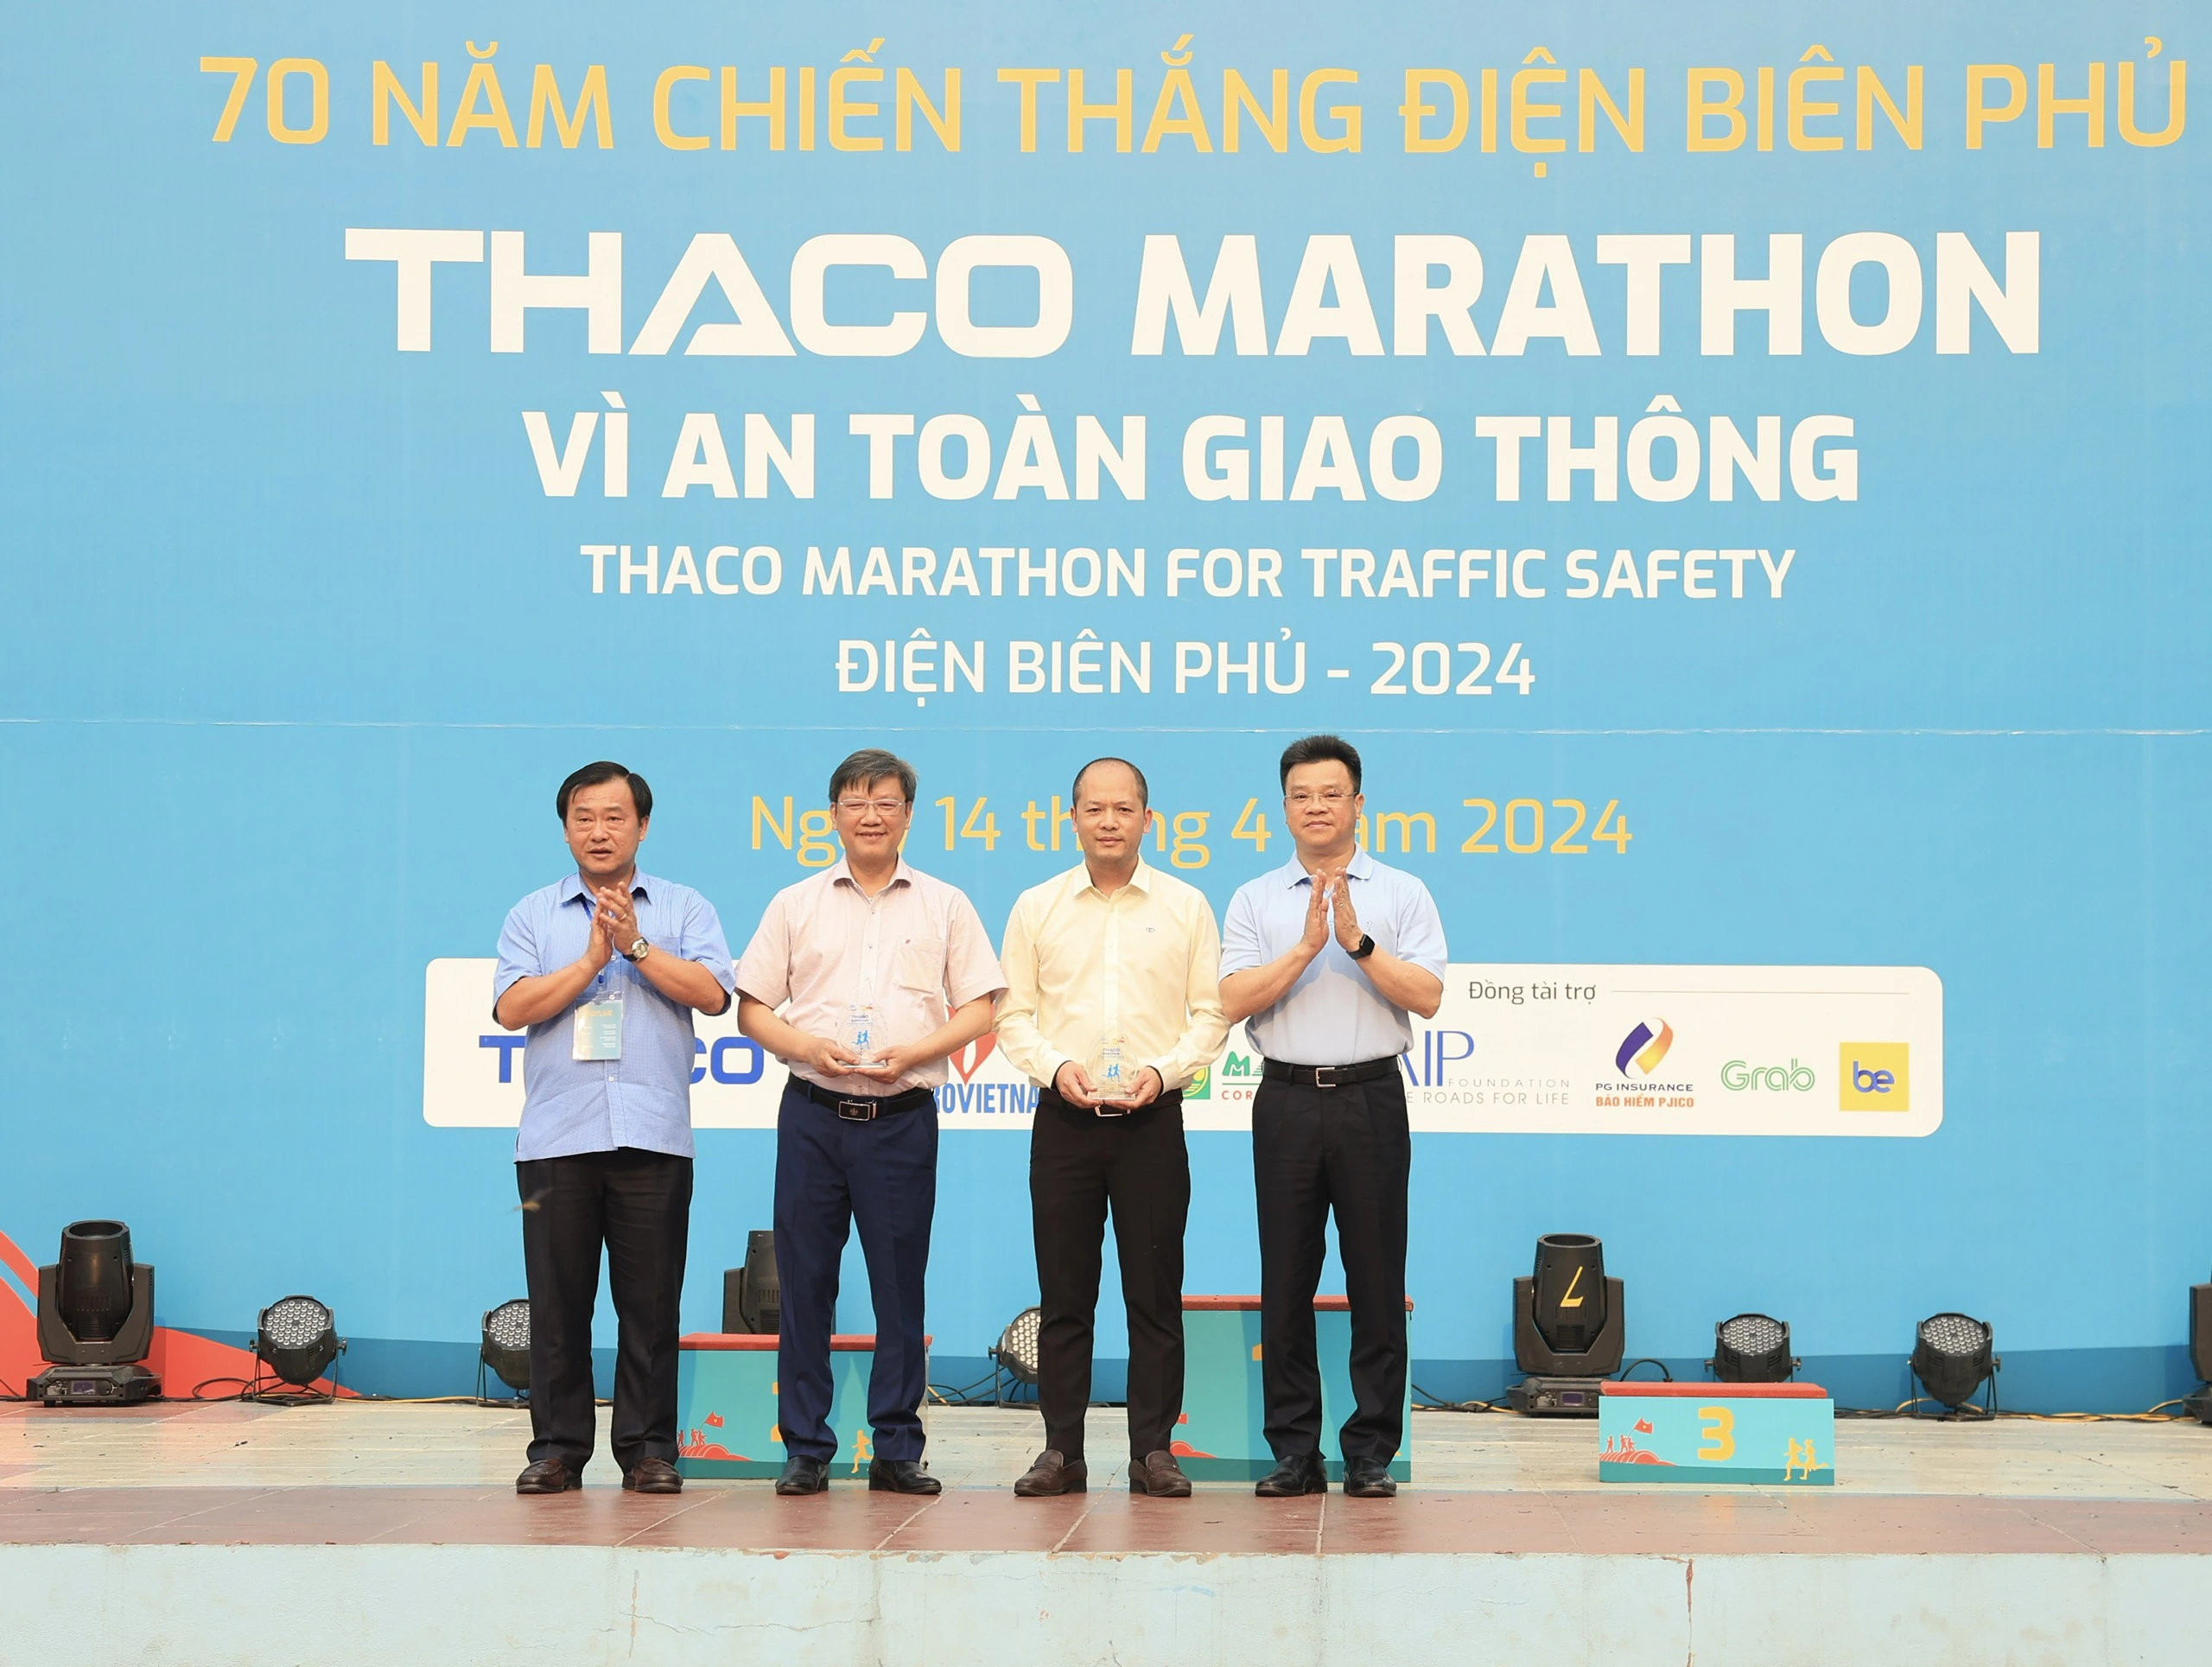 Trực tiếp: Giải THACO Marathon vì ATGT - Điện Biên Phủ 2024 thành công rực rỡ- Ảnh 15.